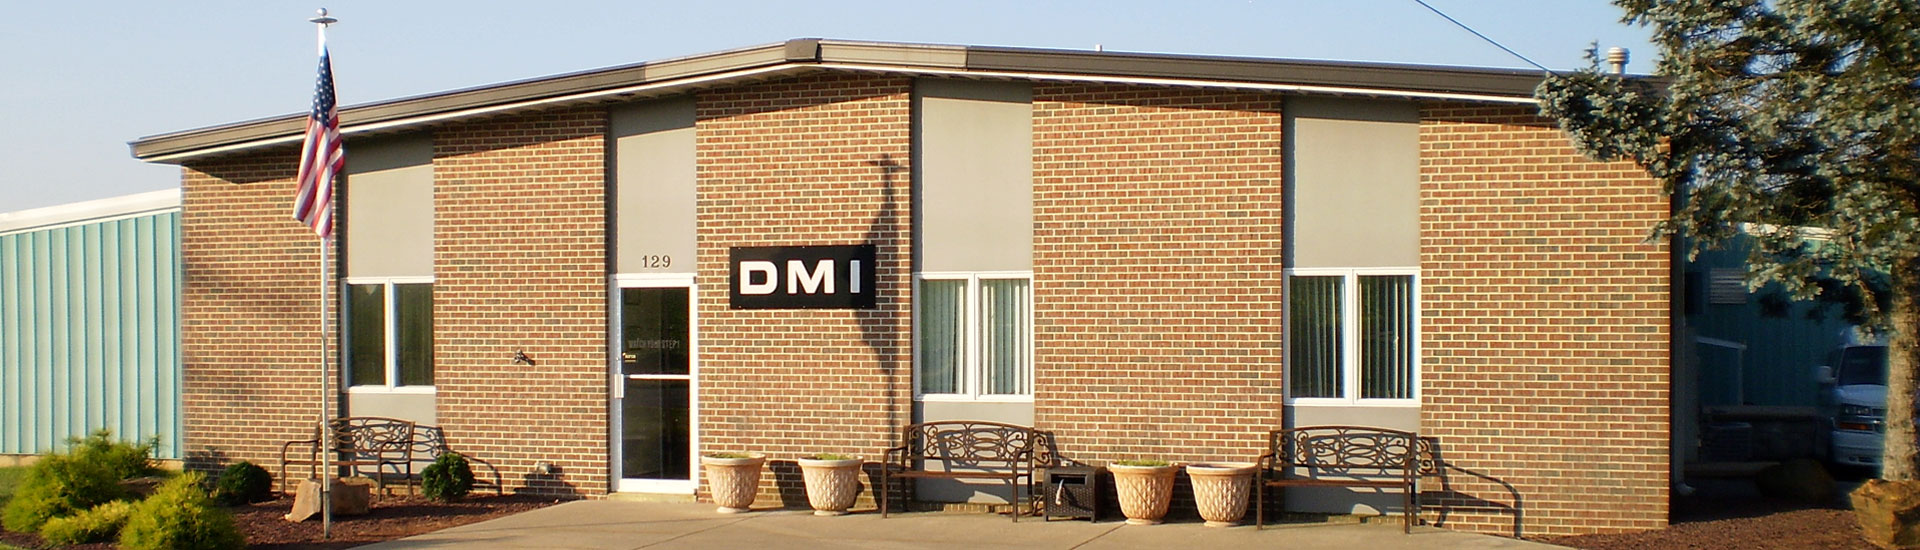 DMI Workplace